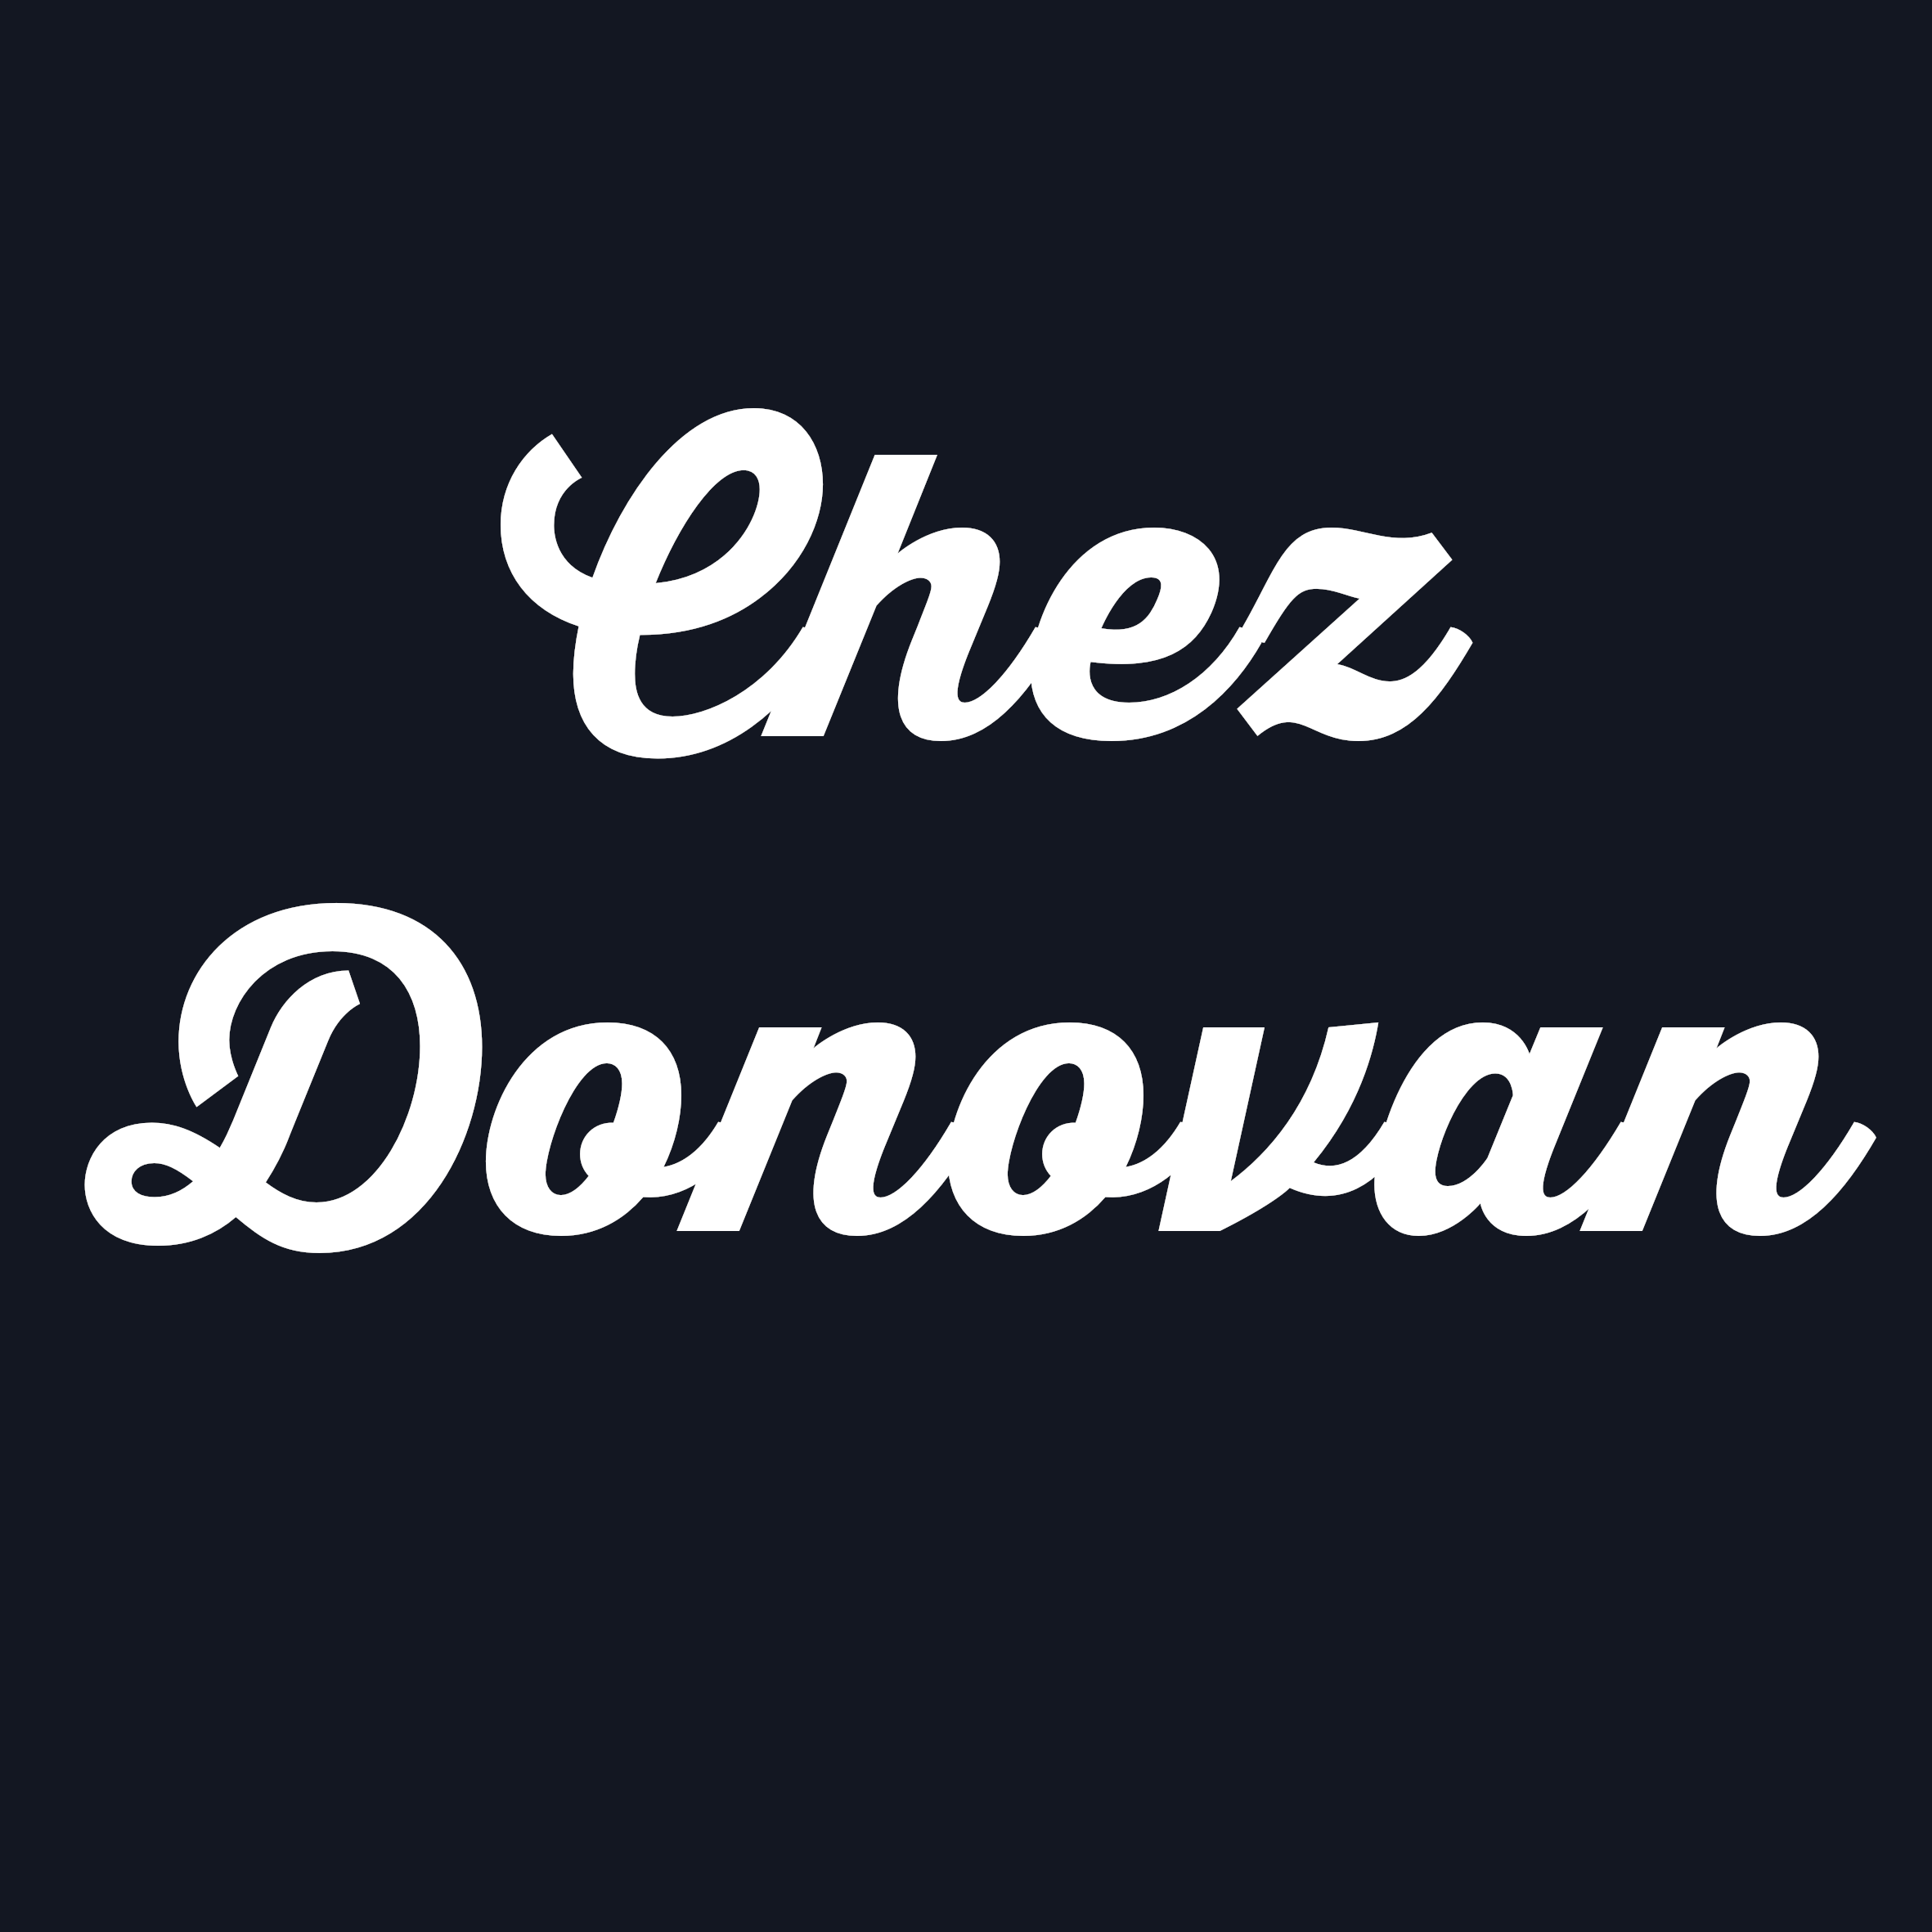 Chez Donovan